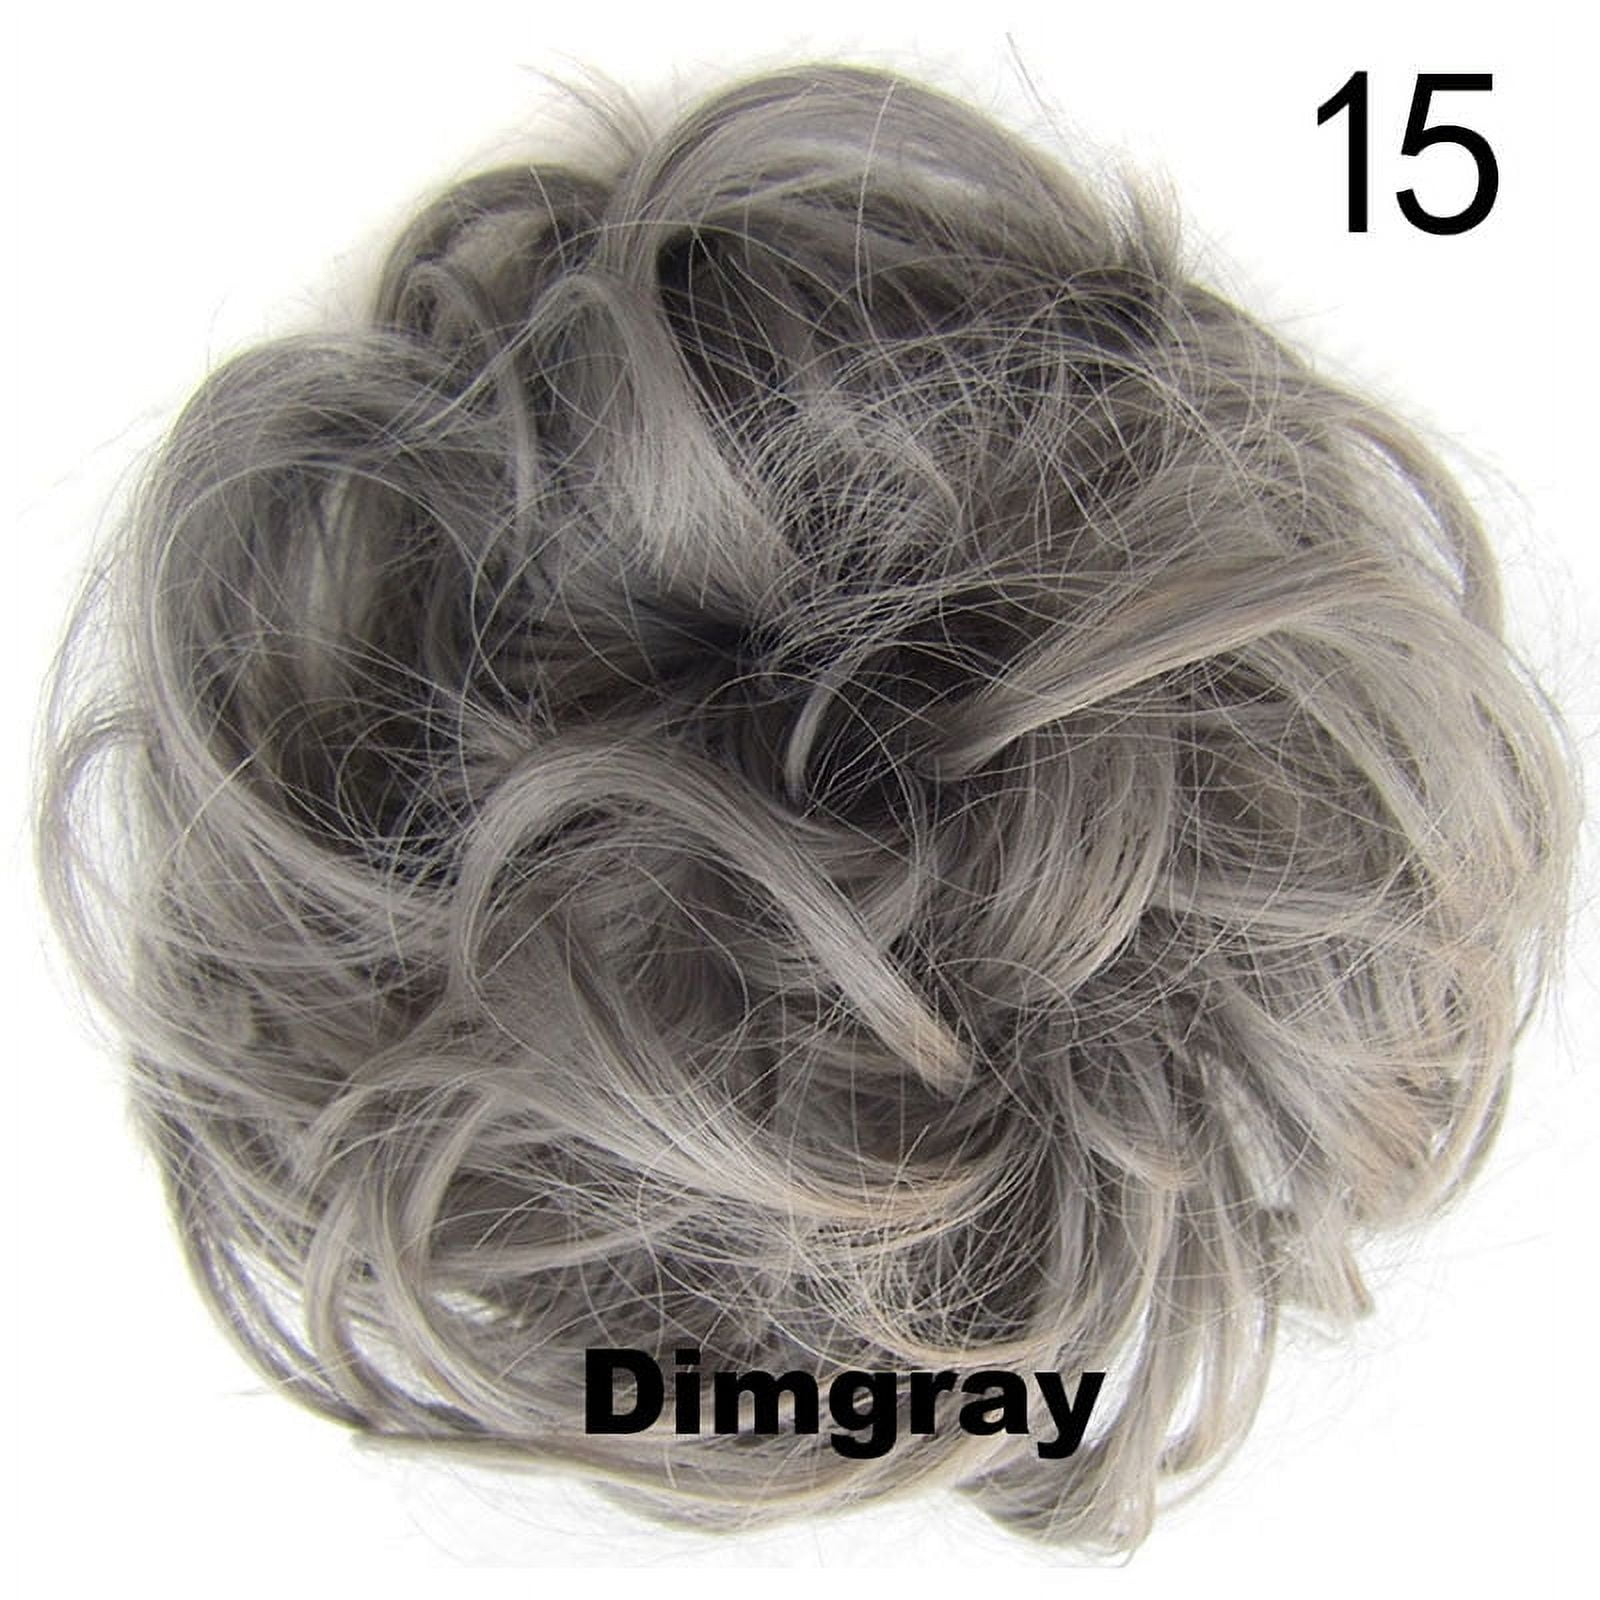 MICRO SENEGALESE TWIST - FREETRESS BULK CROCHET BRAIDING HAIR EXTENSION  BRAID [4 Medium Brown] 